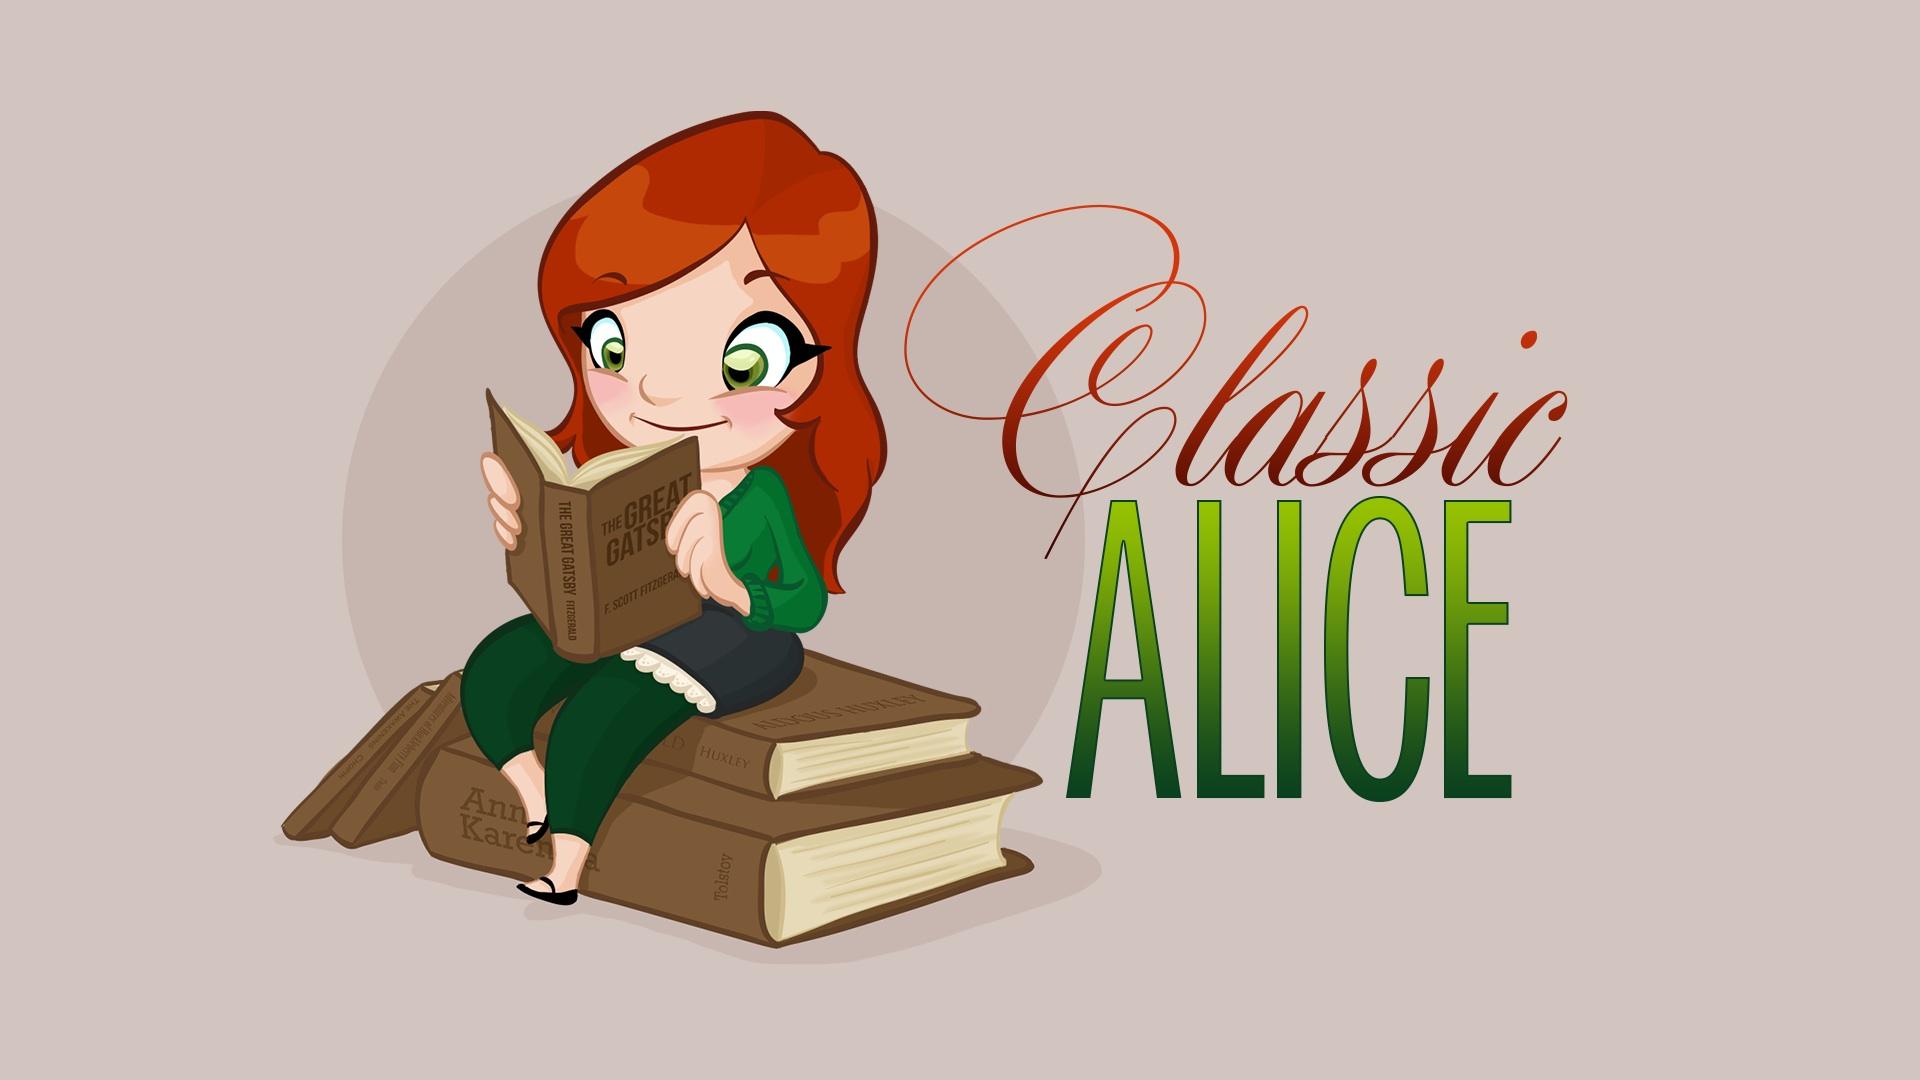 Classic Alice